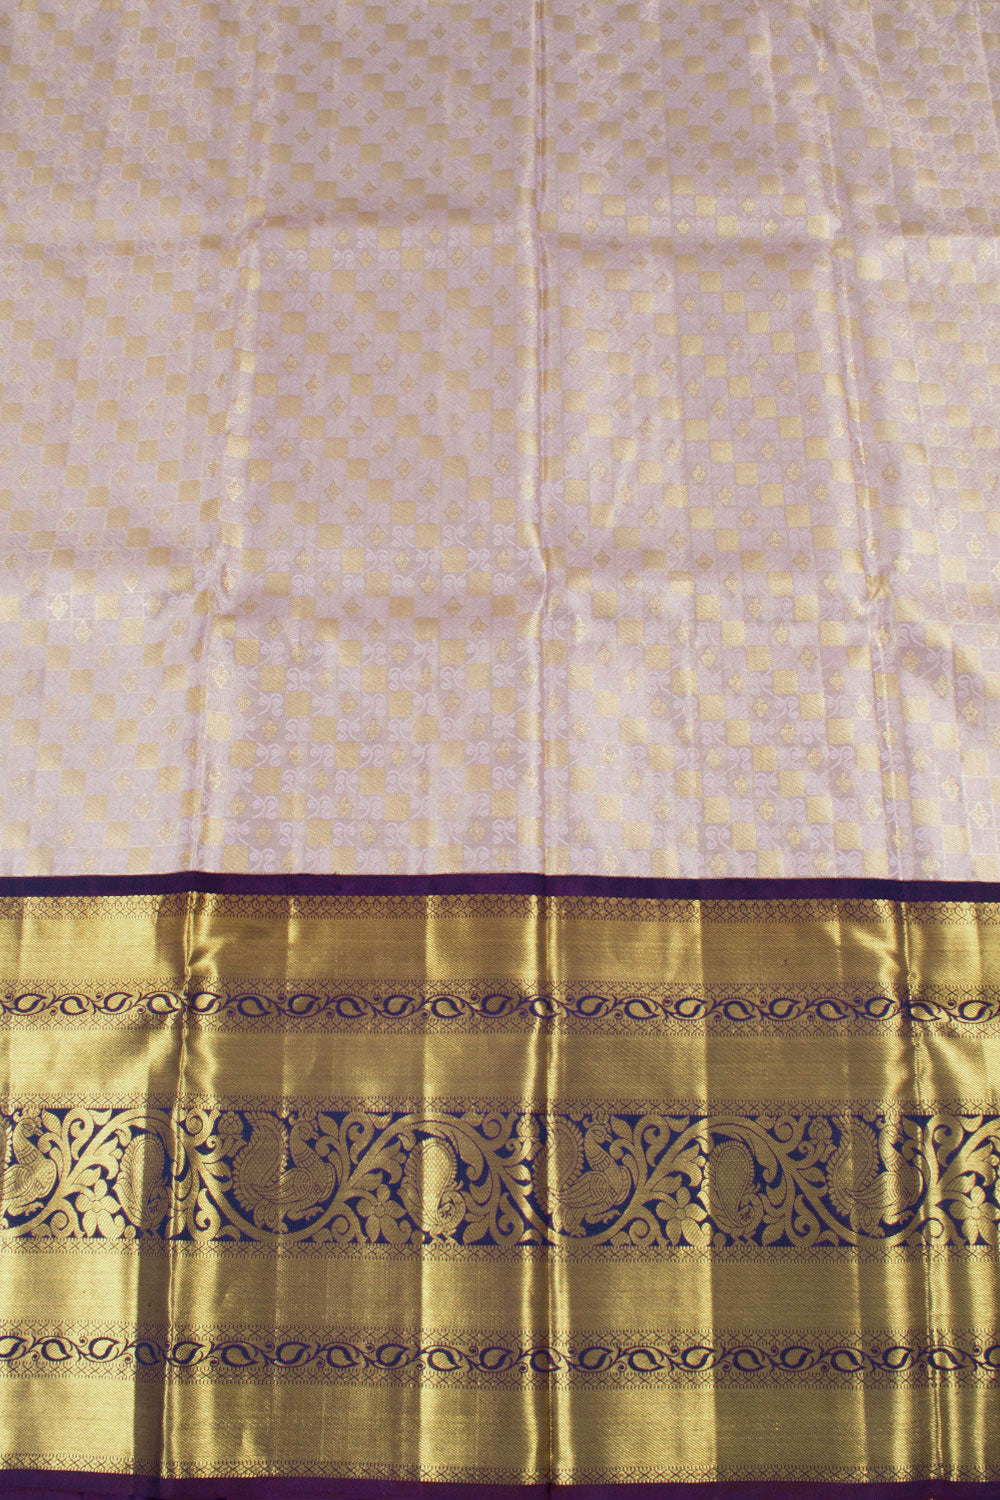 lavender Pure Zari Korvai Kanjivaram Tissue Silk Pattu Pavadai Material 10058089